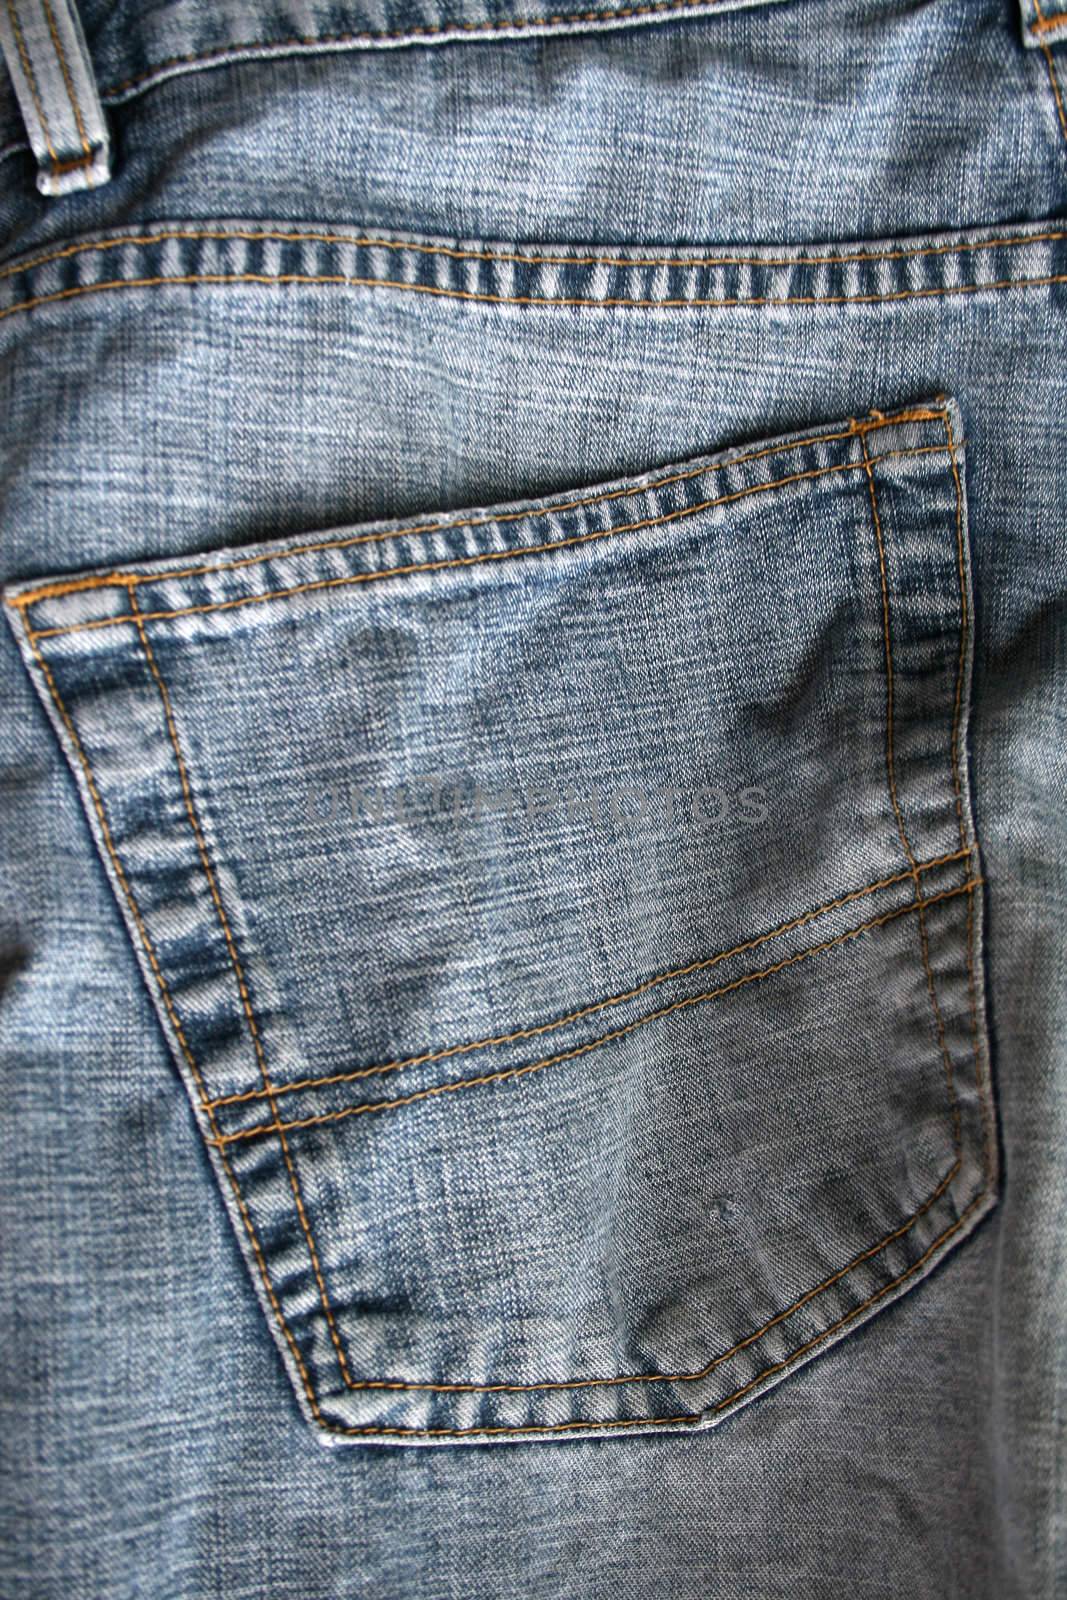 jeans pocket by leafy